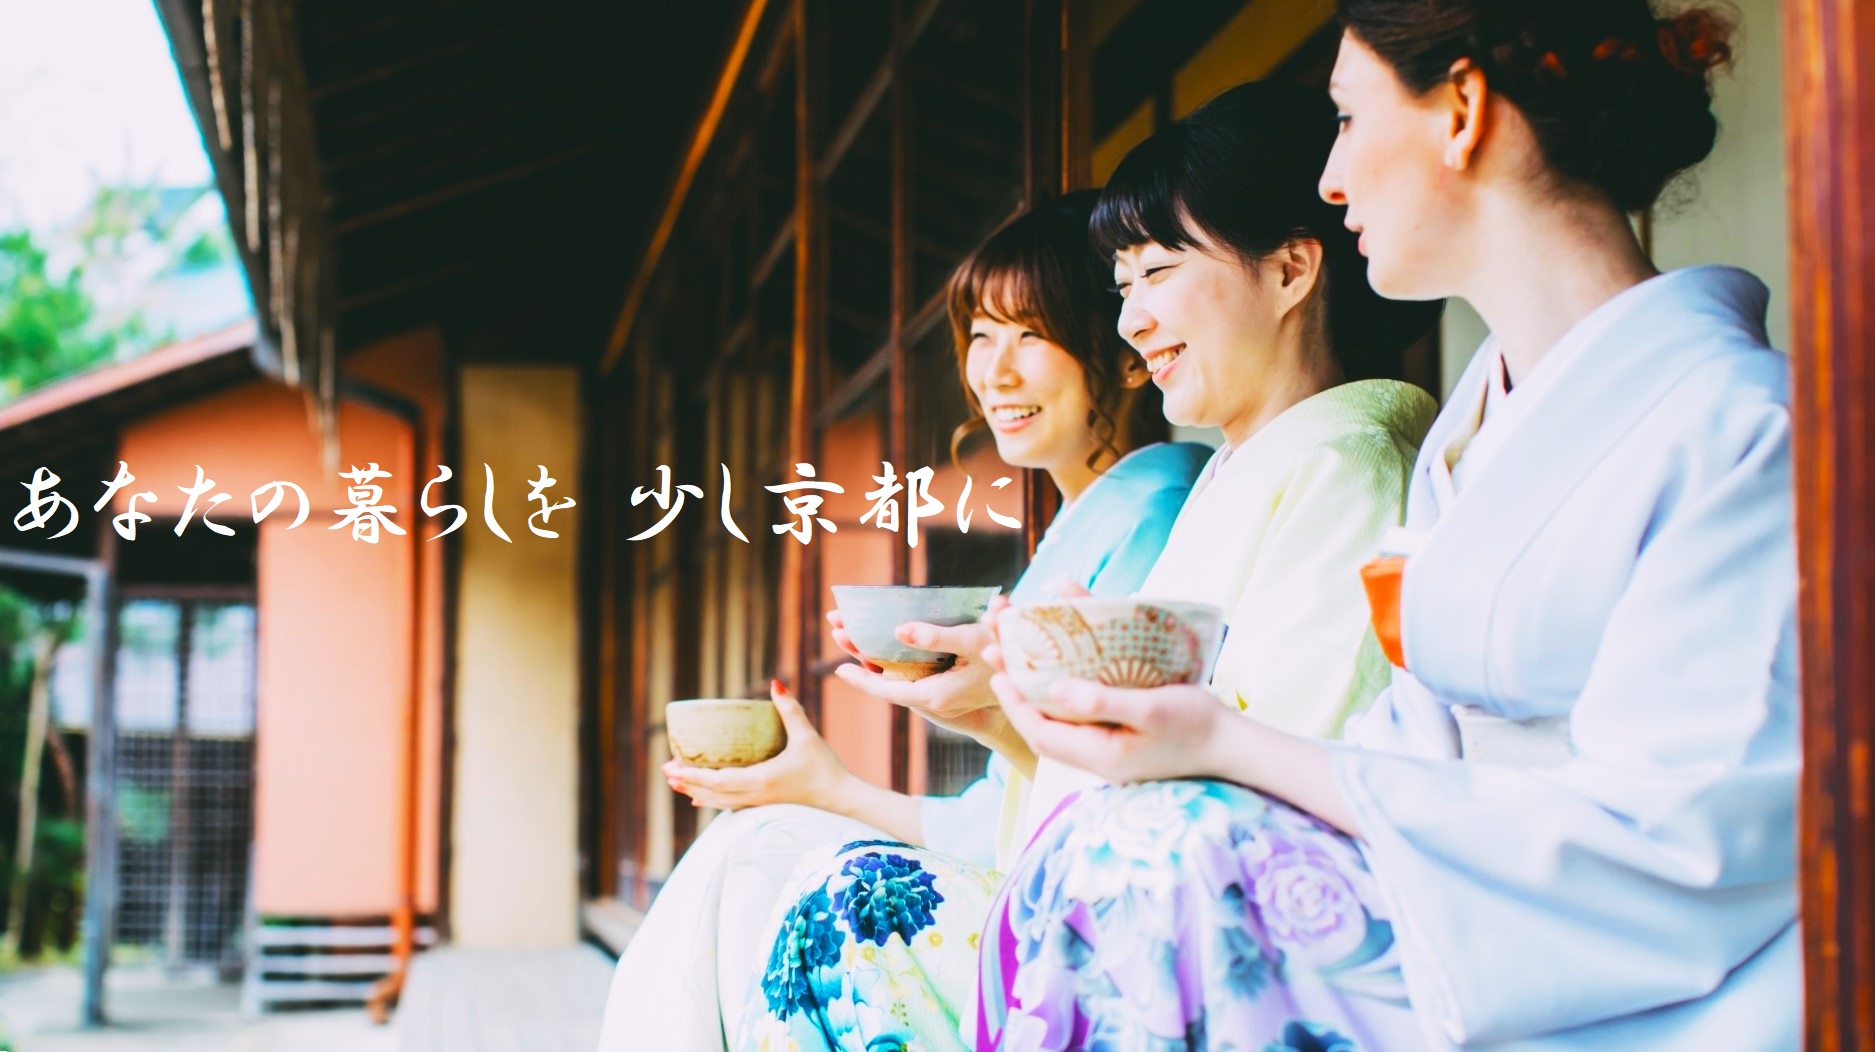 3人の着物女性が抹茶を飲み笑う画像